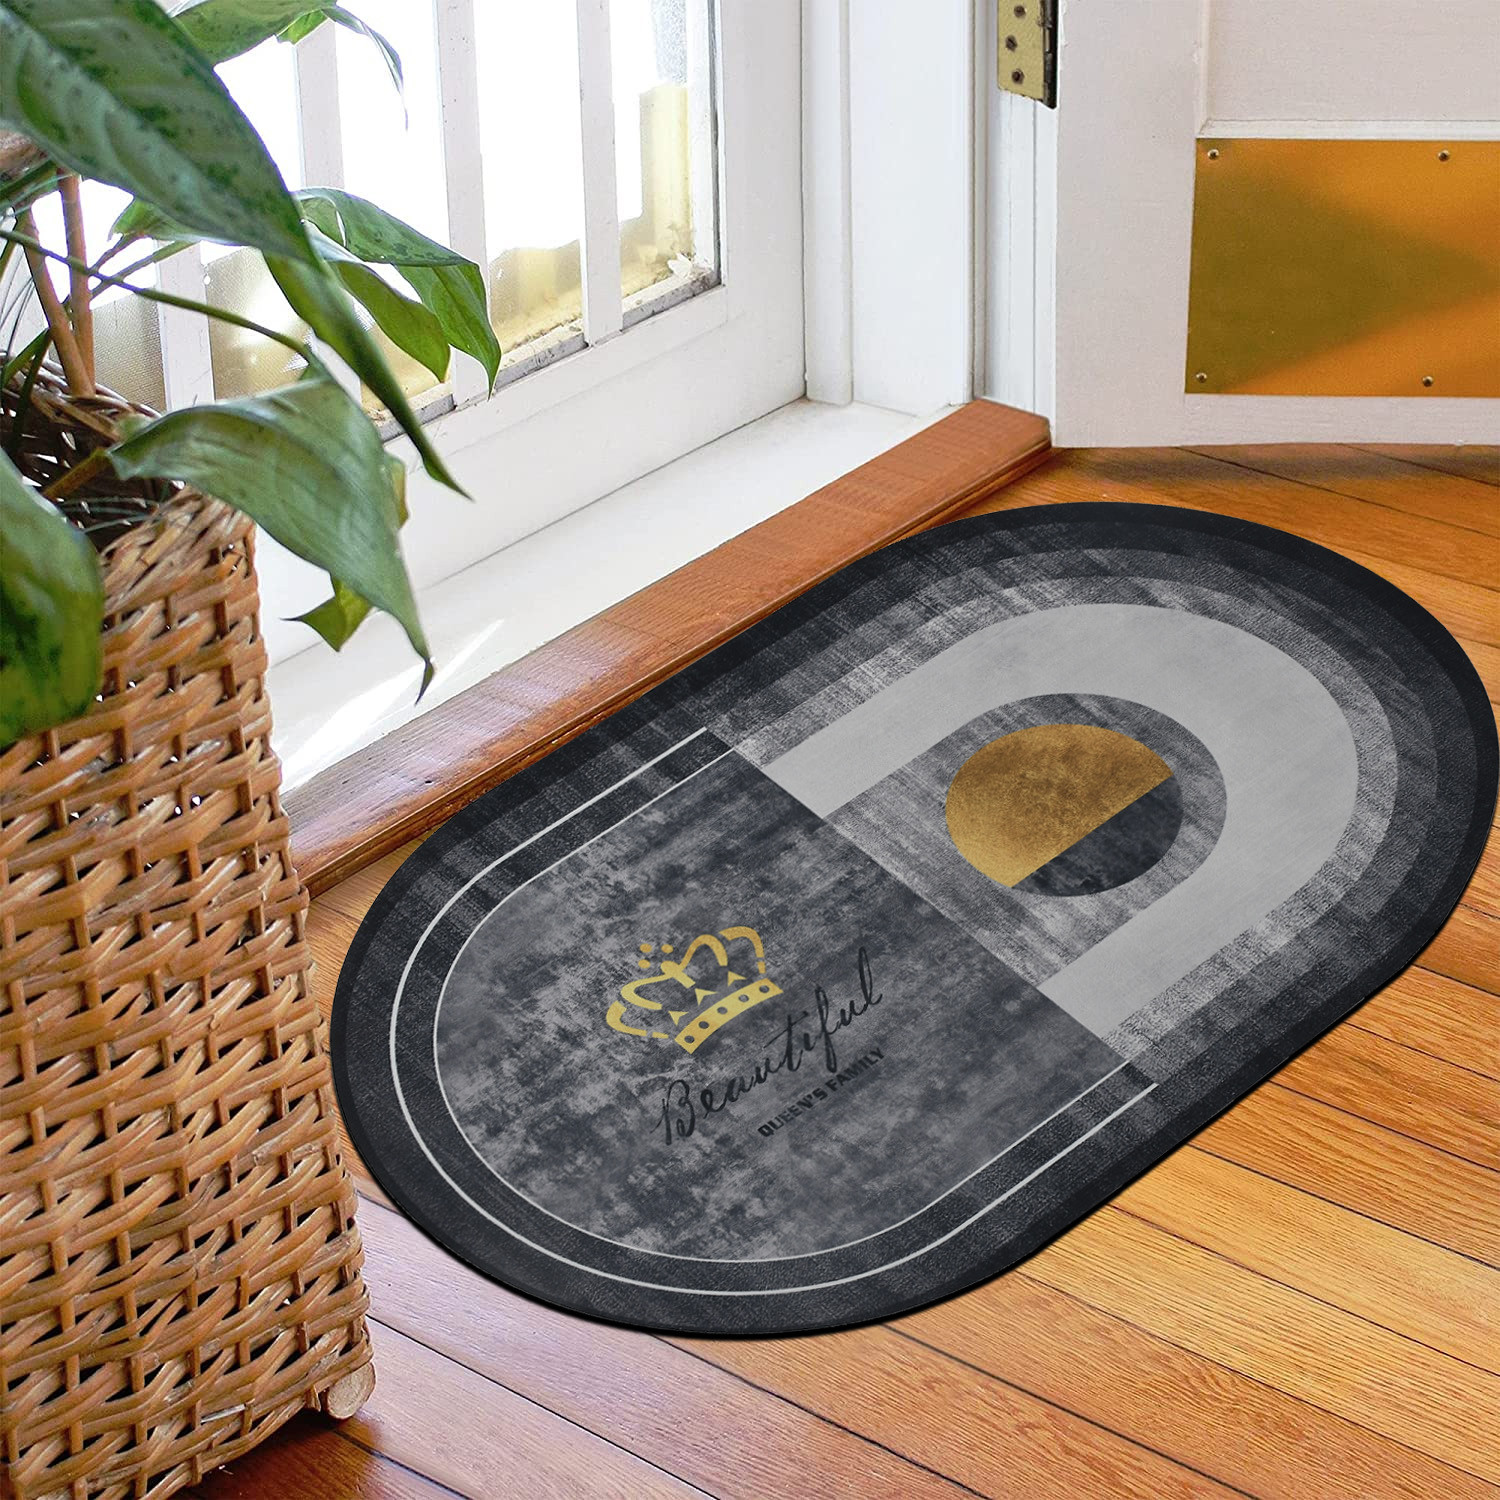 Kuber Industries Doormat|Doormat for Door Entrance|Doormats for Rooms|Doormat for Home|Memory Foam Queen's Family Doormat (Grey)